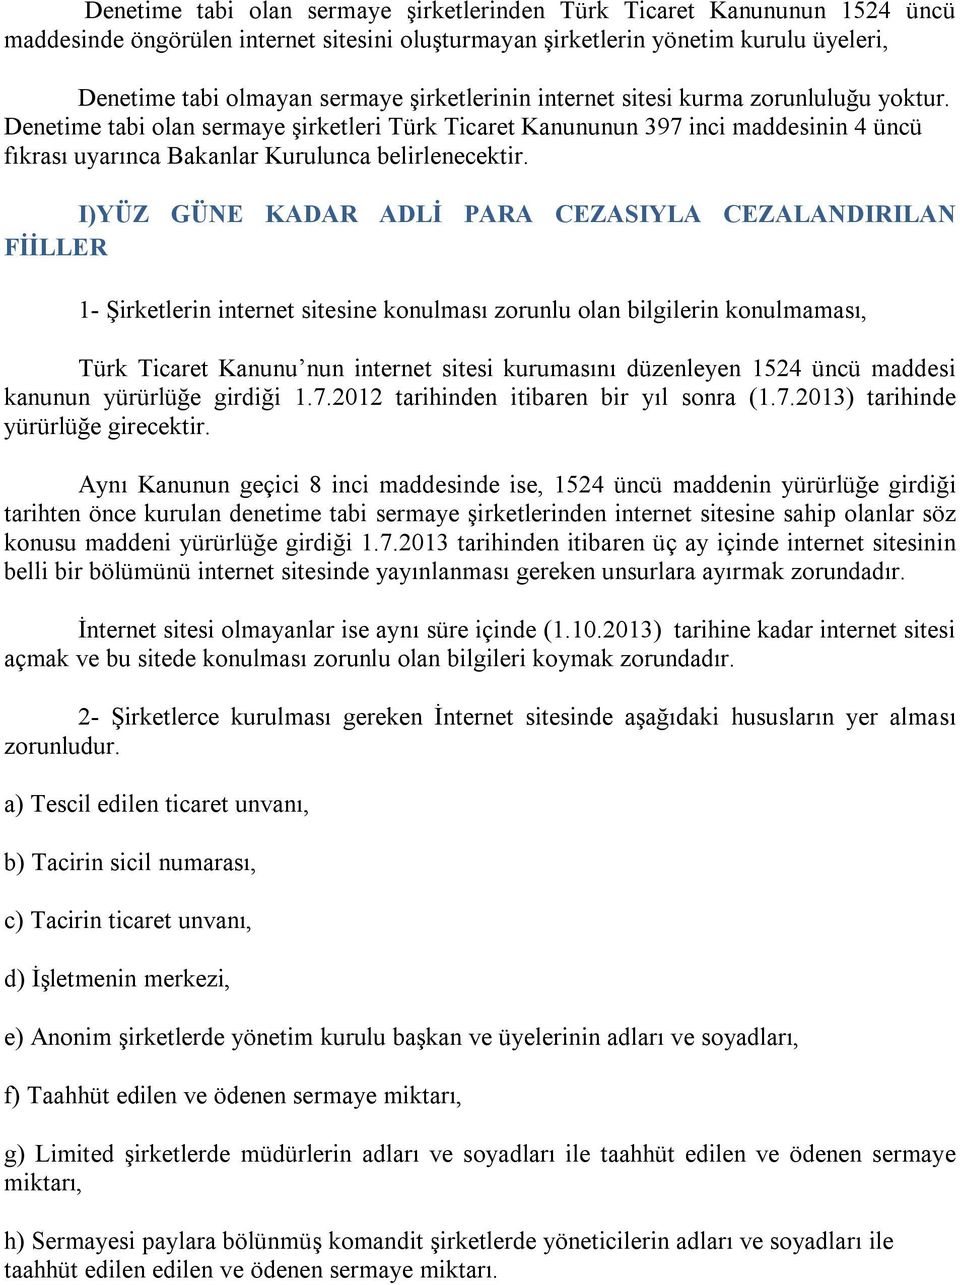 I)YÜZ GÜNE KADAR ADLİ PARA CEZASIYLA CEZALANDIRILAN FİİLLER 1- Şirketlerin internet sitesine konulması zorunlu olan bilgilerin konulmaması, Türk Ticaret Kanunu nun internet sitesi kurumasını